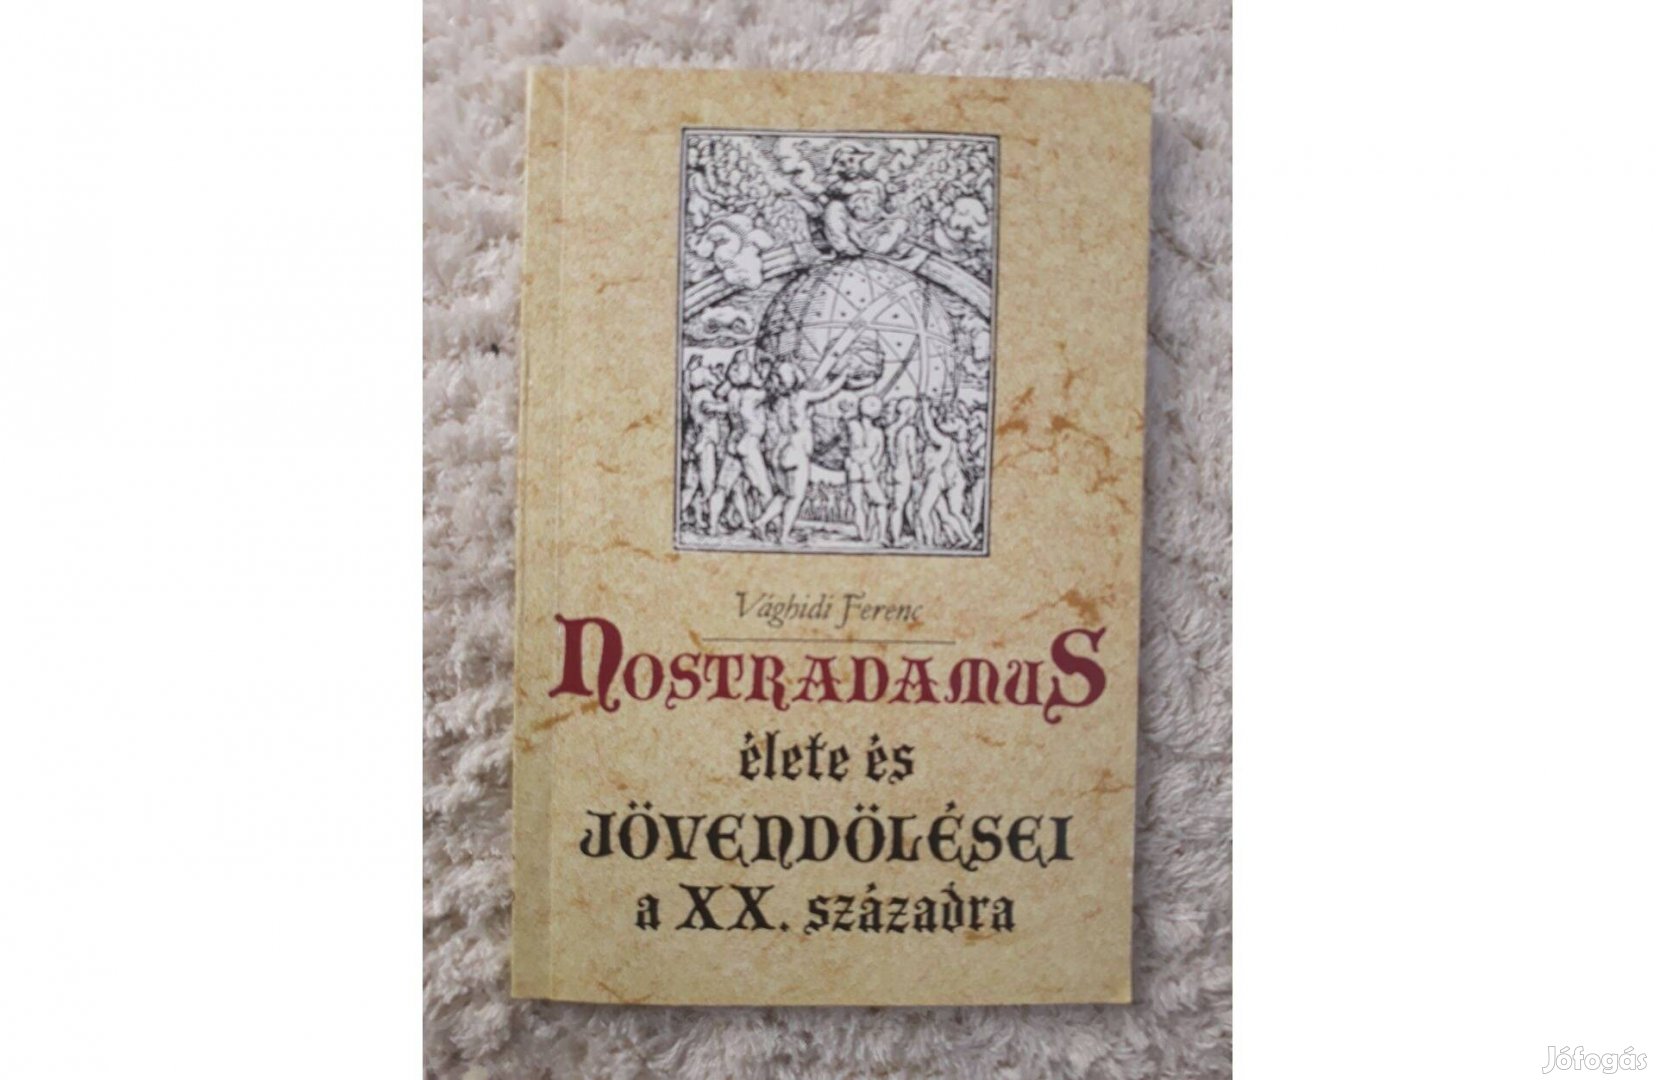 Vághidi Ferenc: Nostradamus élete és jövendölései a XX. századra